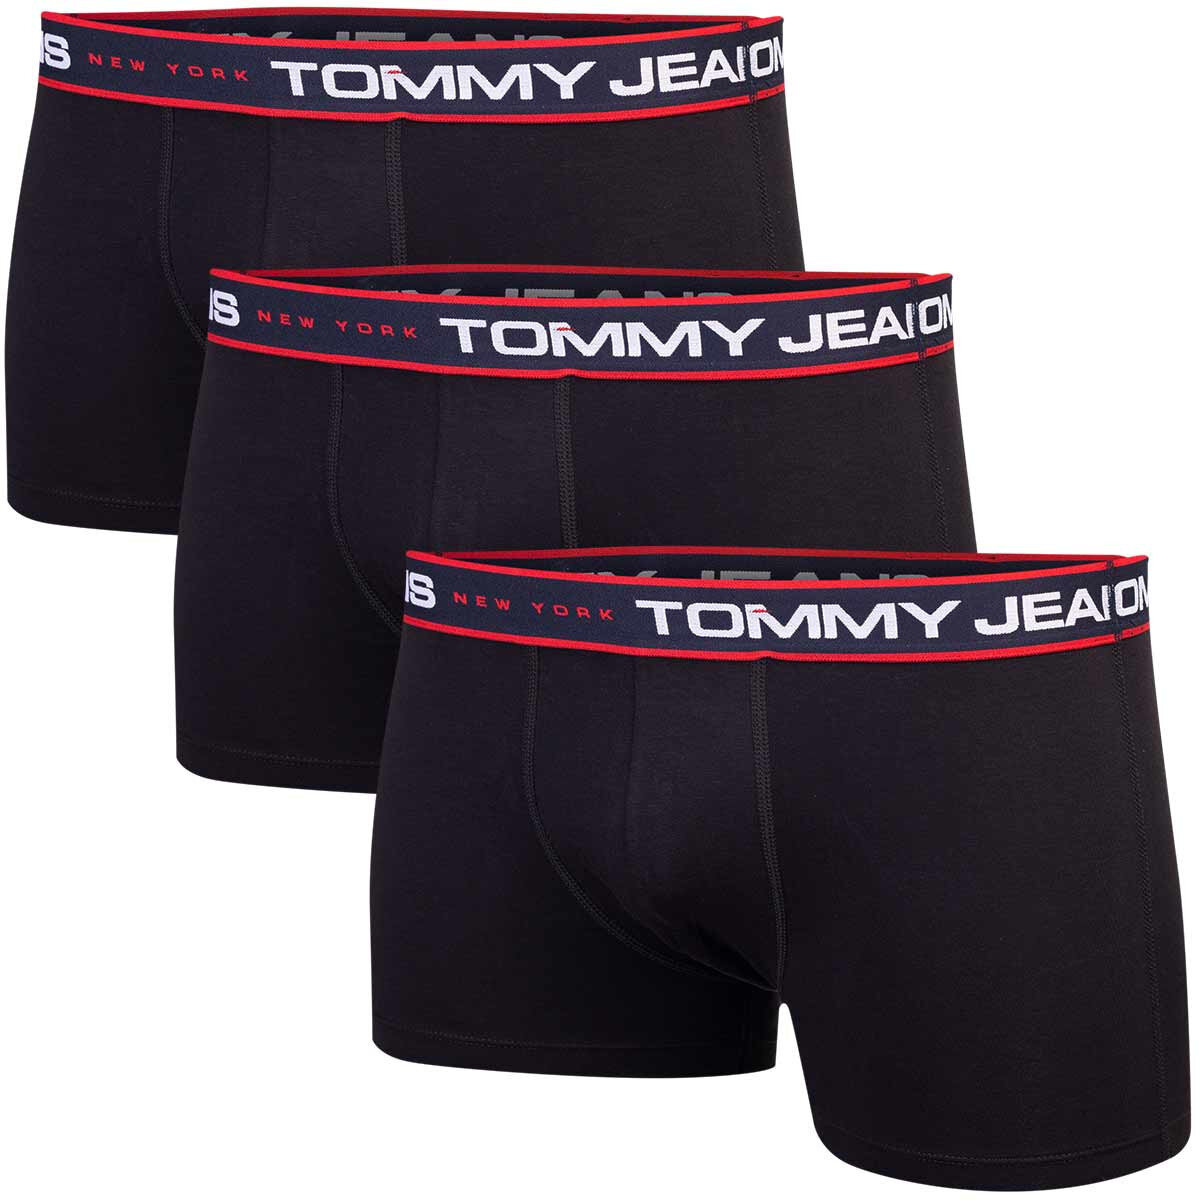 Černé boxerky Jeans - Tommy Hilfiger (3 ks), L i10_P67822_2:90_